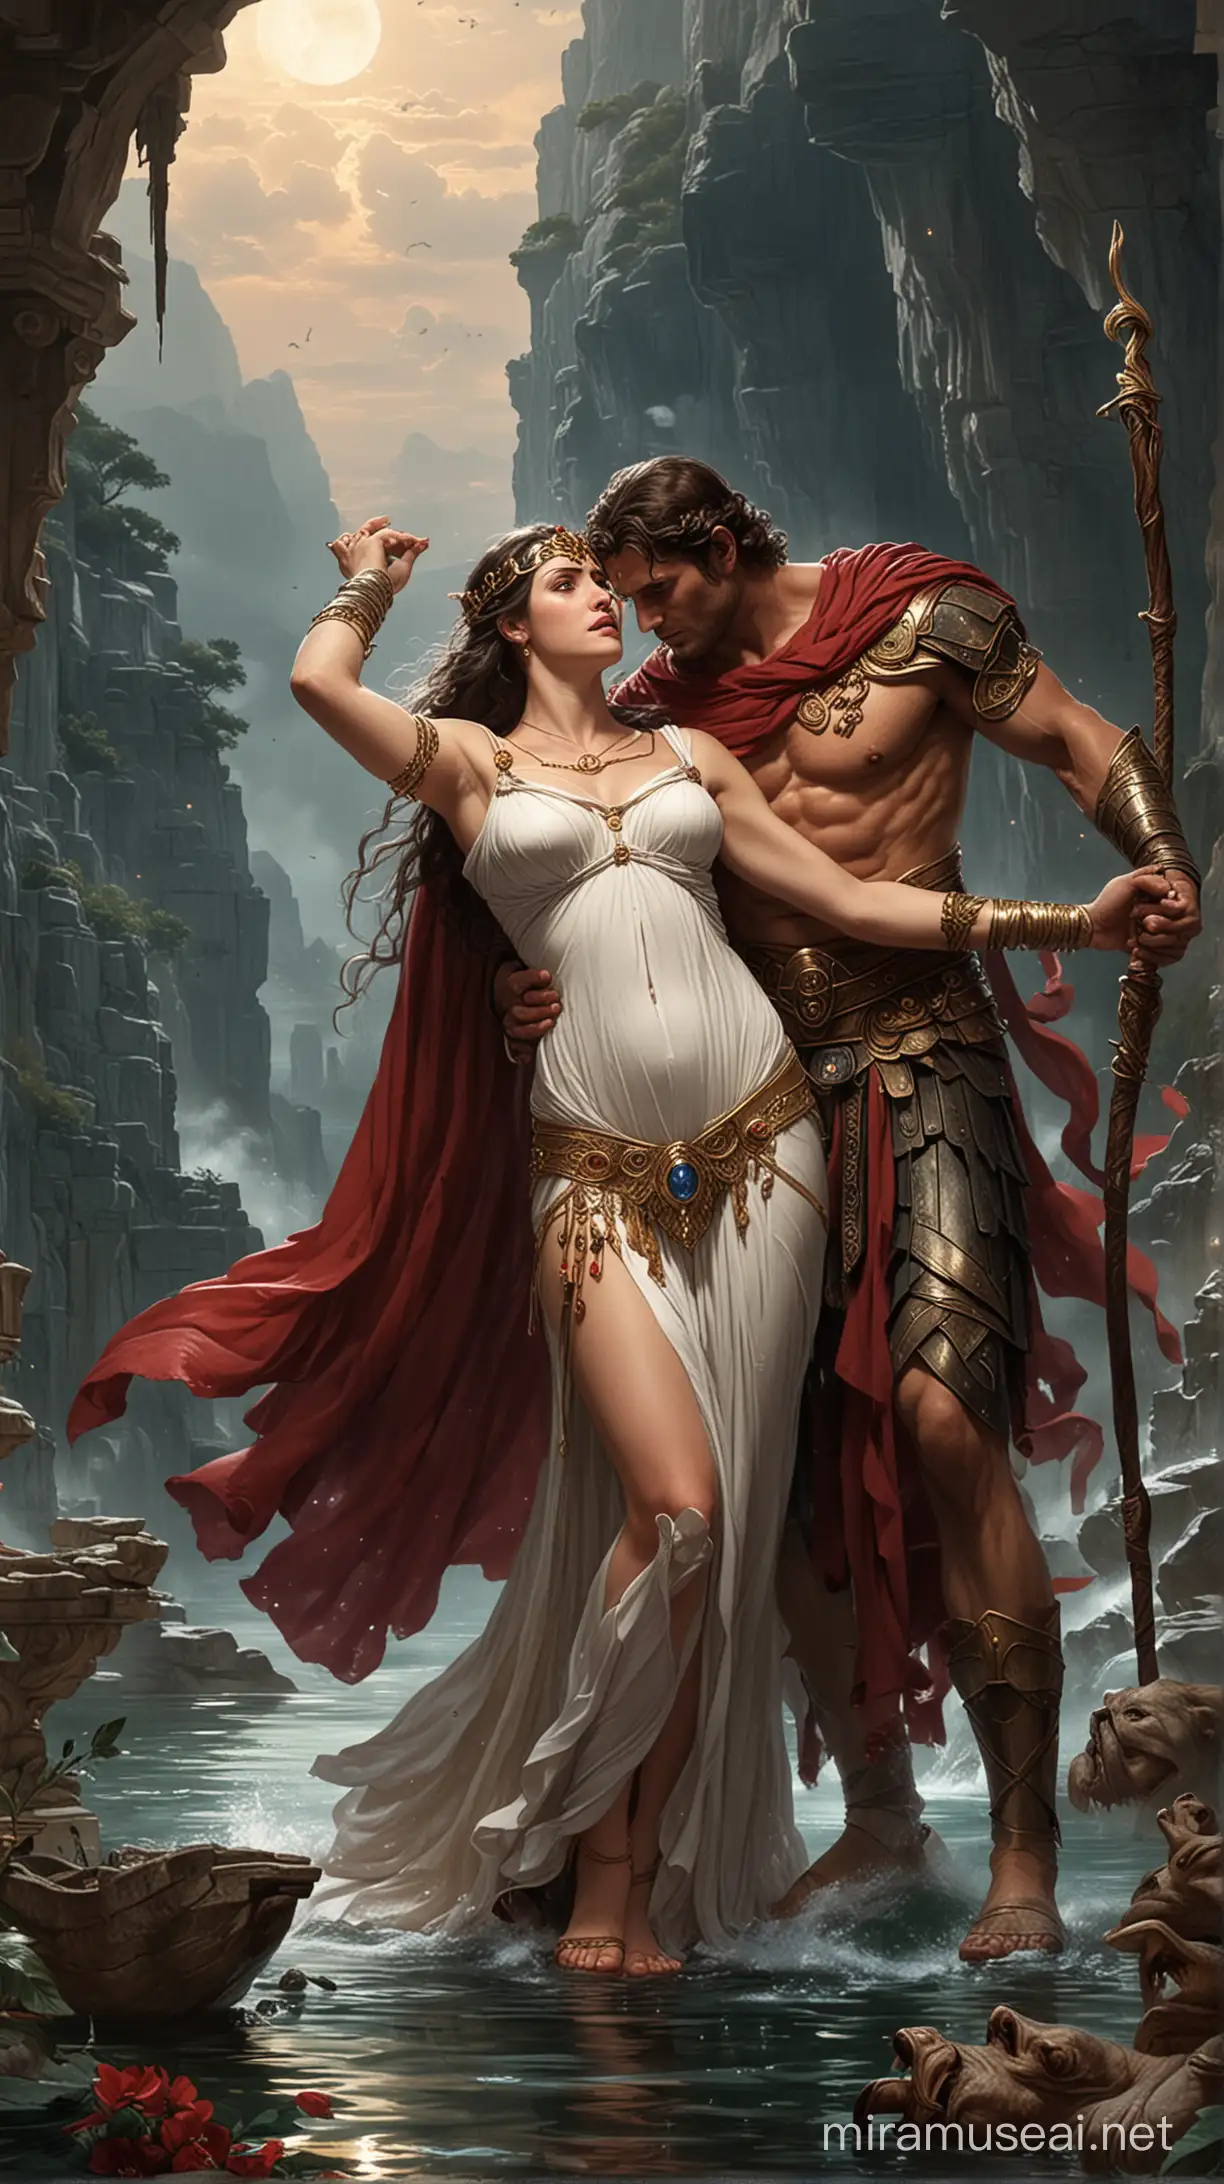 Jason y medea, mitologia griega